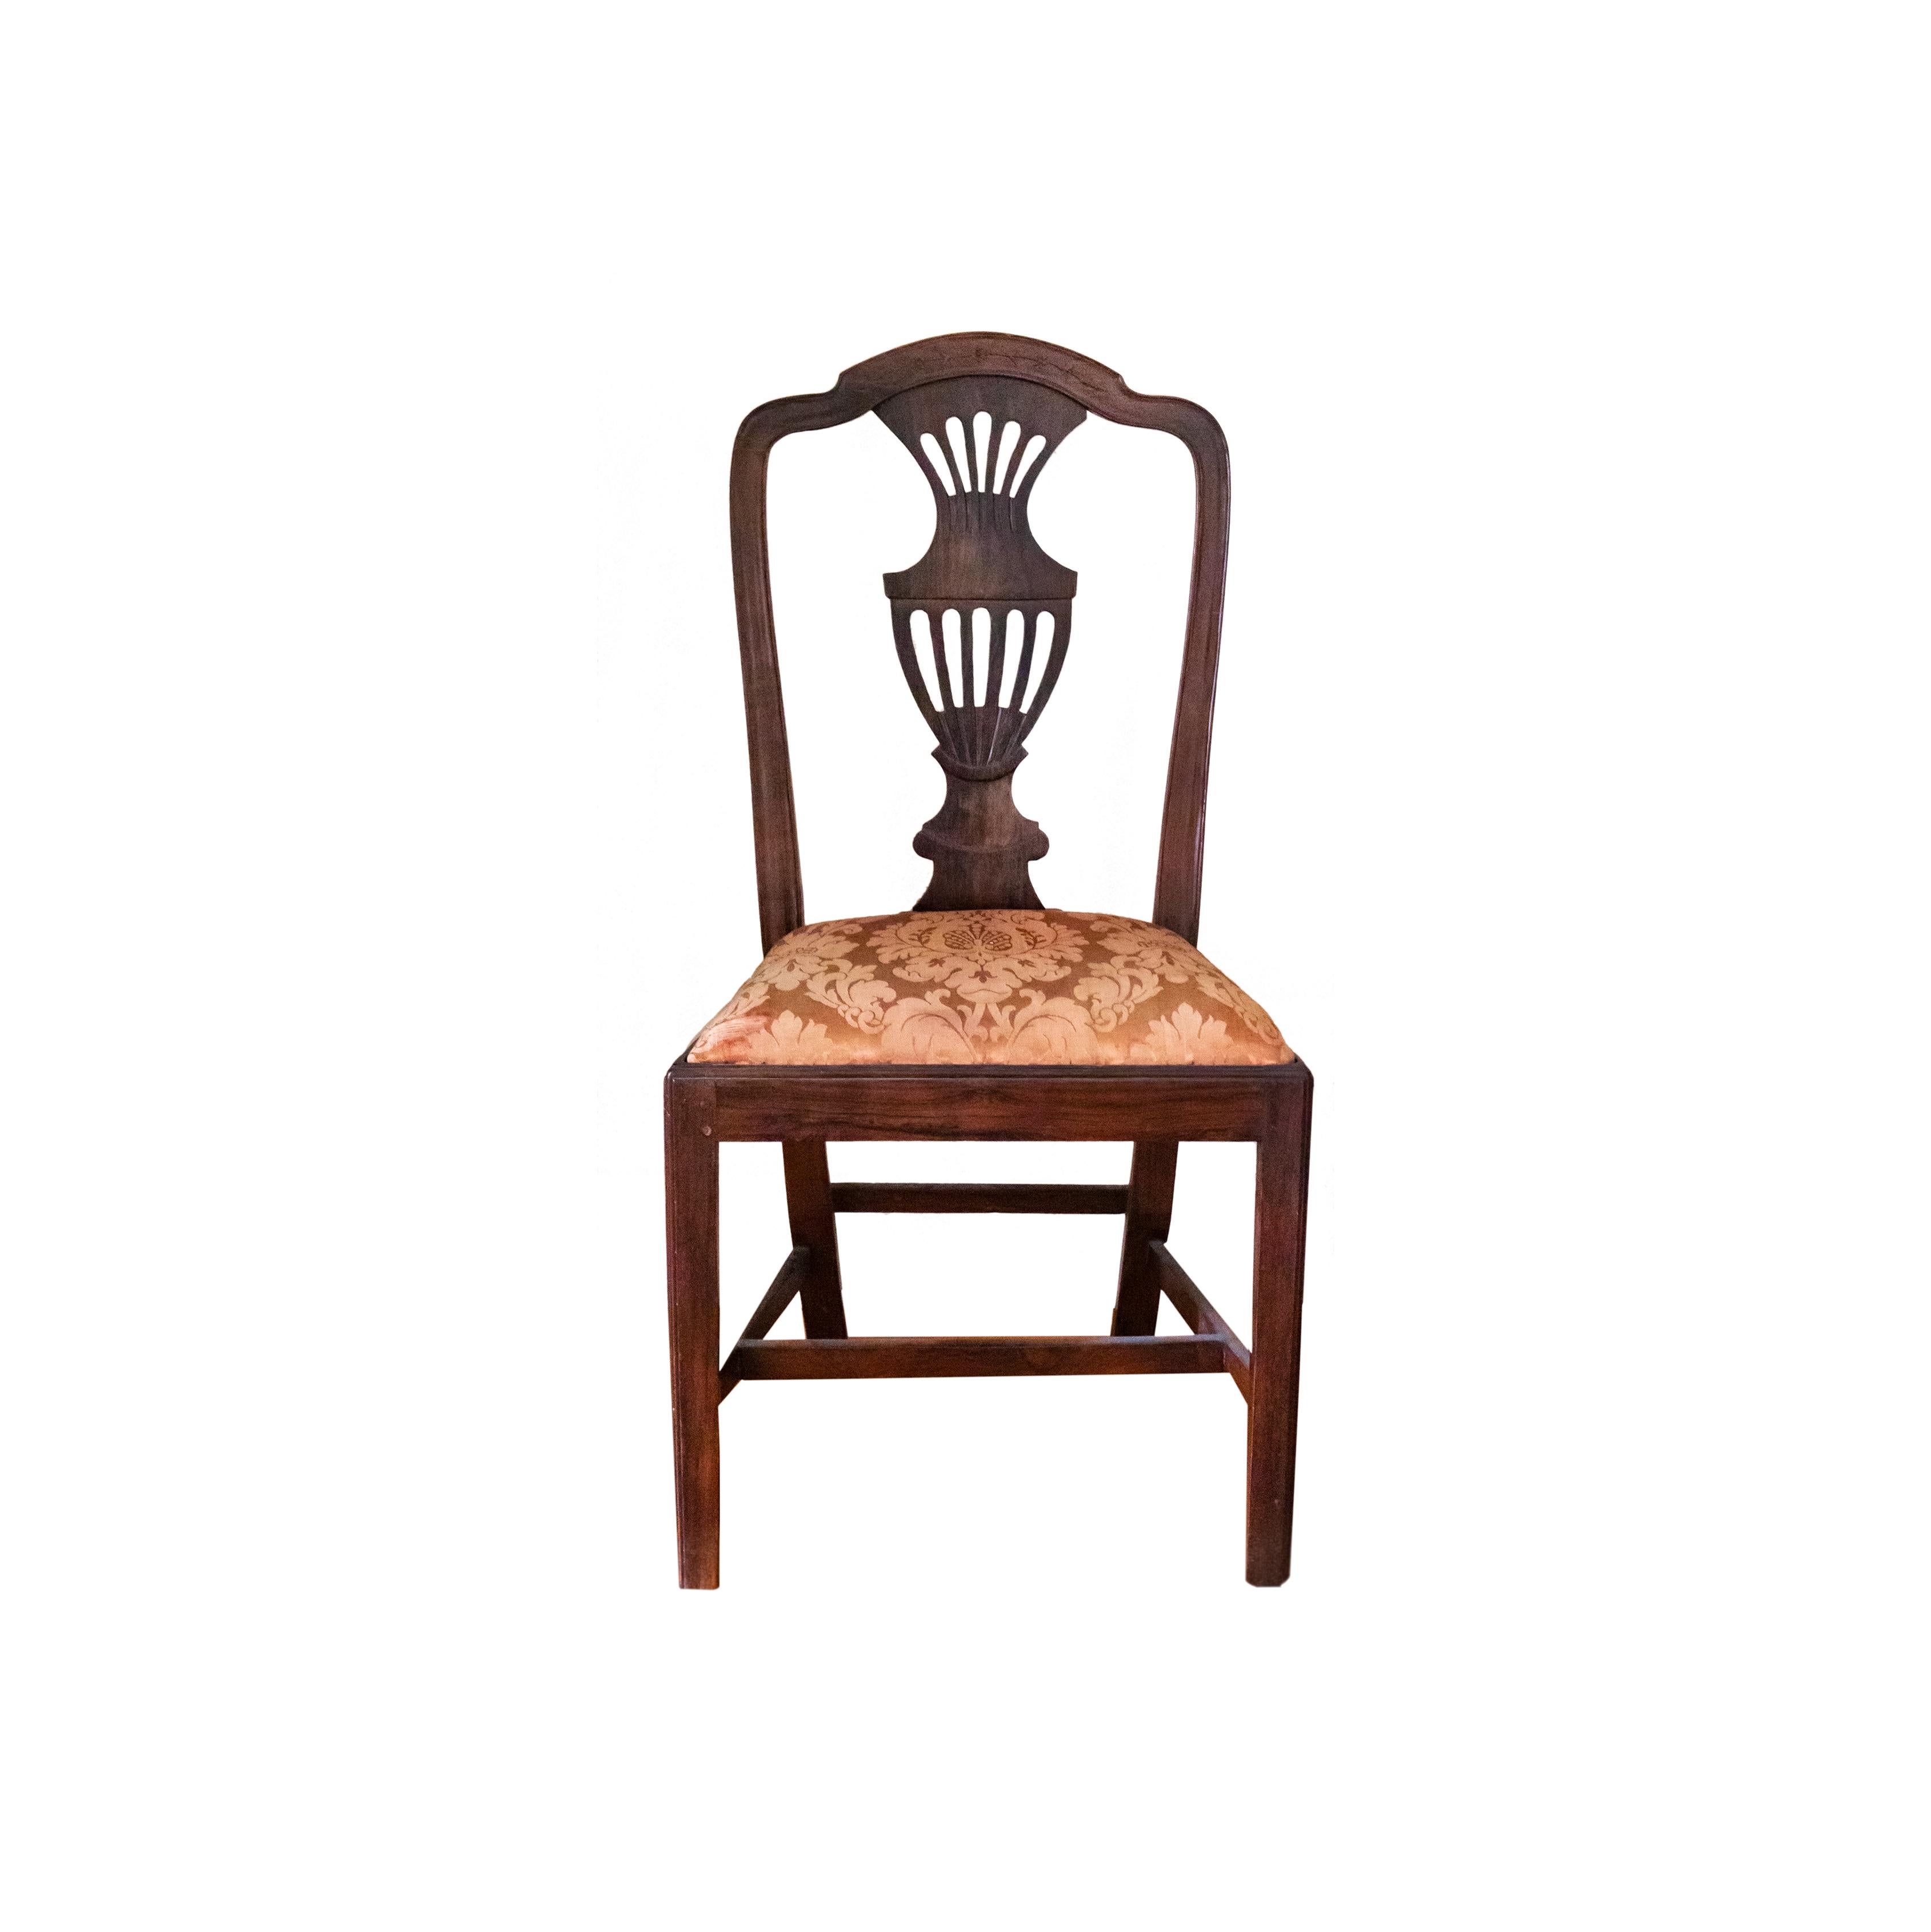 Cette chaise du XIXe siècle illustre le style élégant de Chippendale, avec un dossier en amphore gracieusement incurvé et orné d'une exquise tapisserie en damas. Elle a fait l'objet de soins méticuleux et a été récemment inspectée par un charpentier